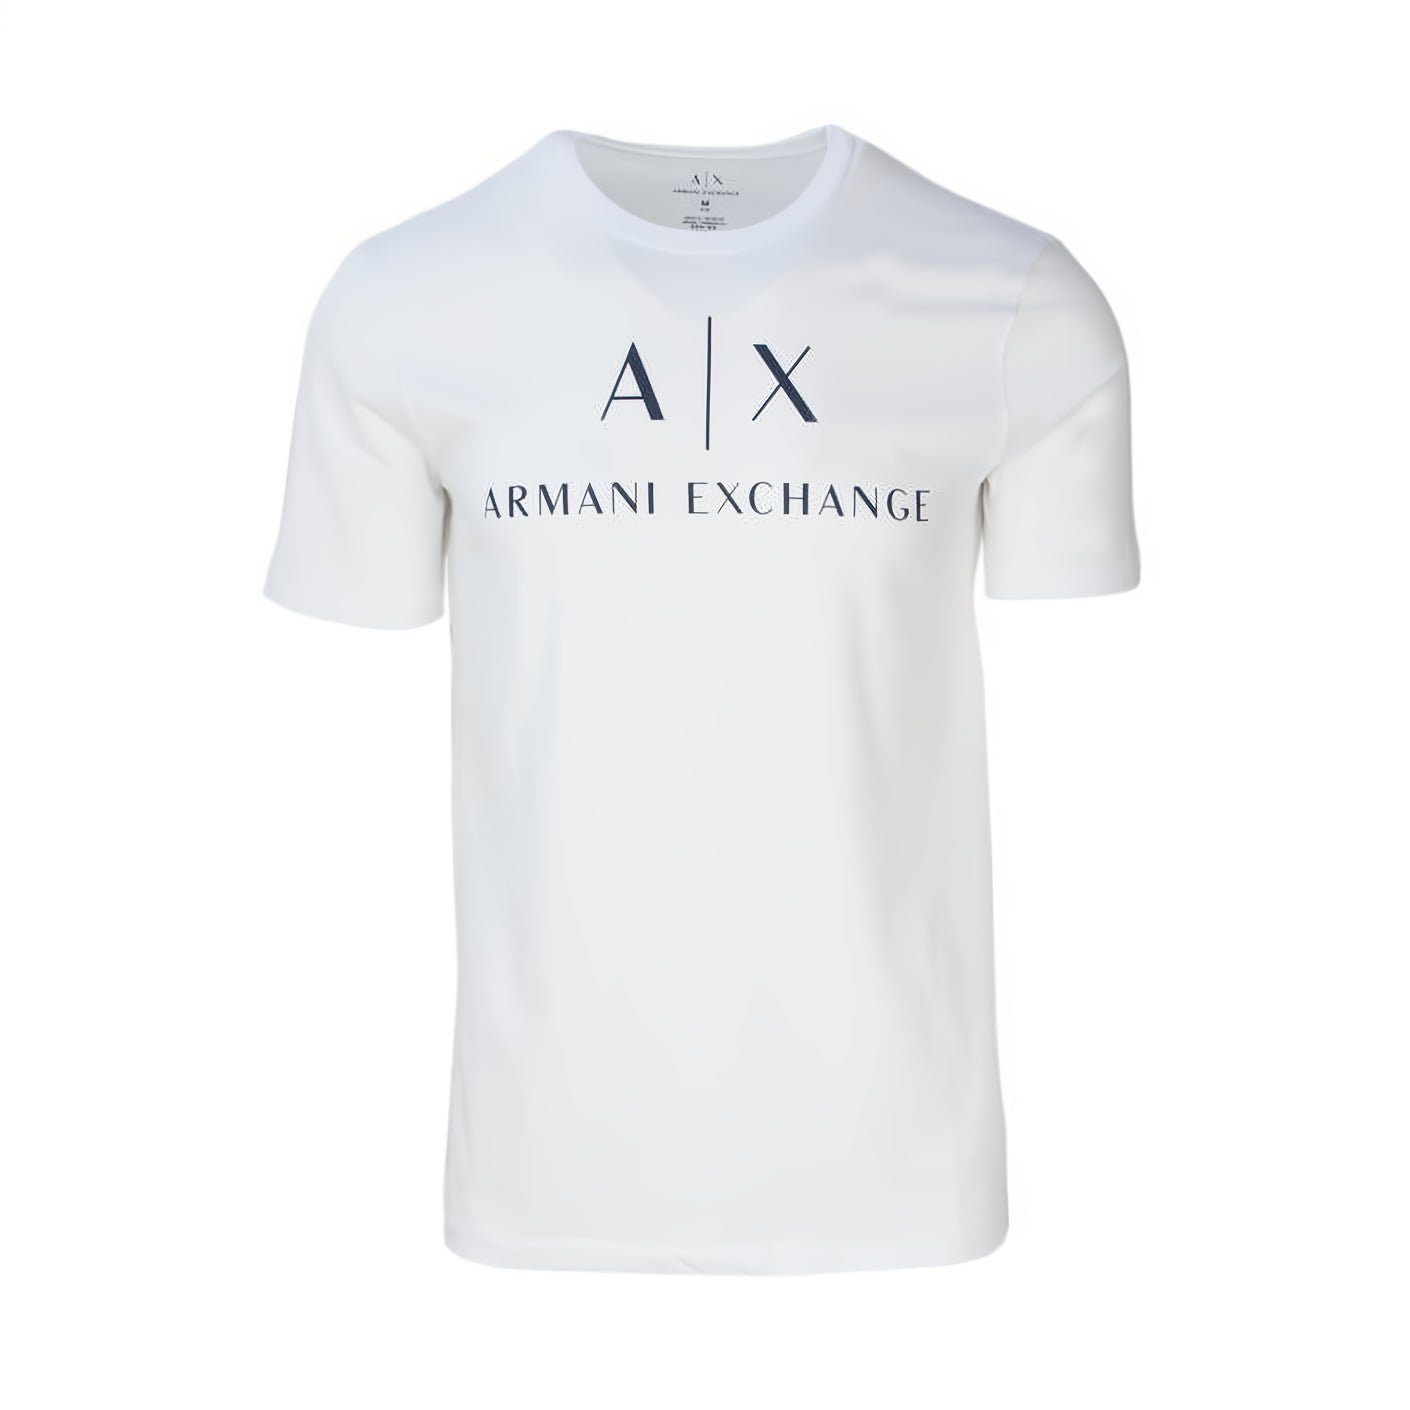 ARMANI EXCHANGE T-Shirt kurzarm, Rundhals, ein Must-Have für Ihre Kleidungskollektion! Weiß